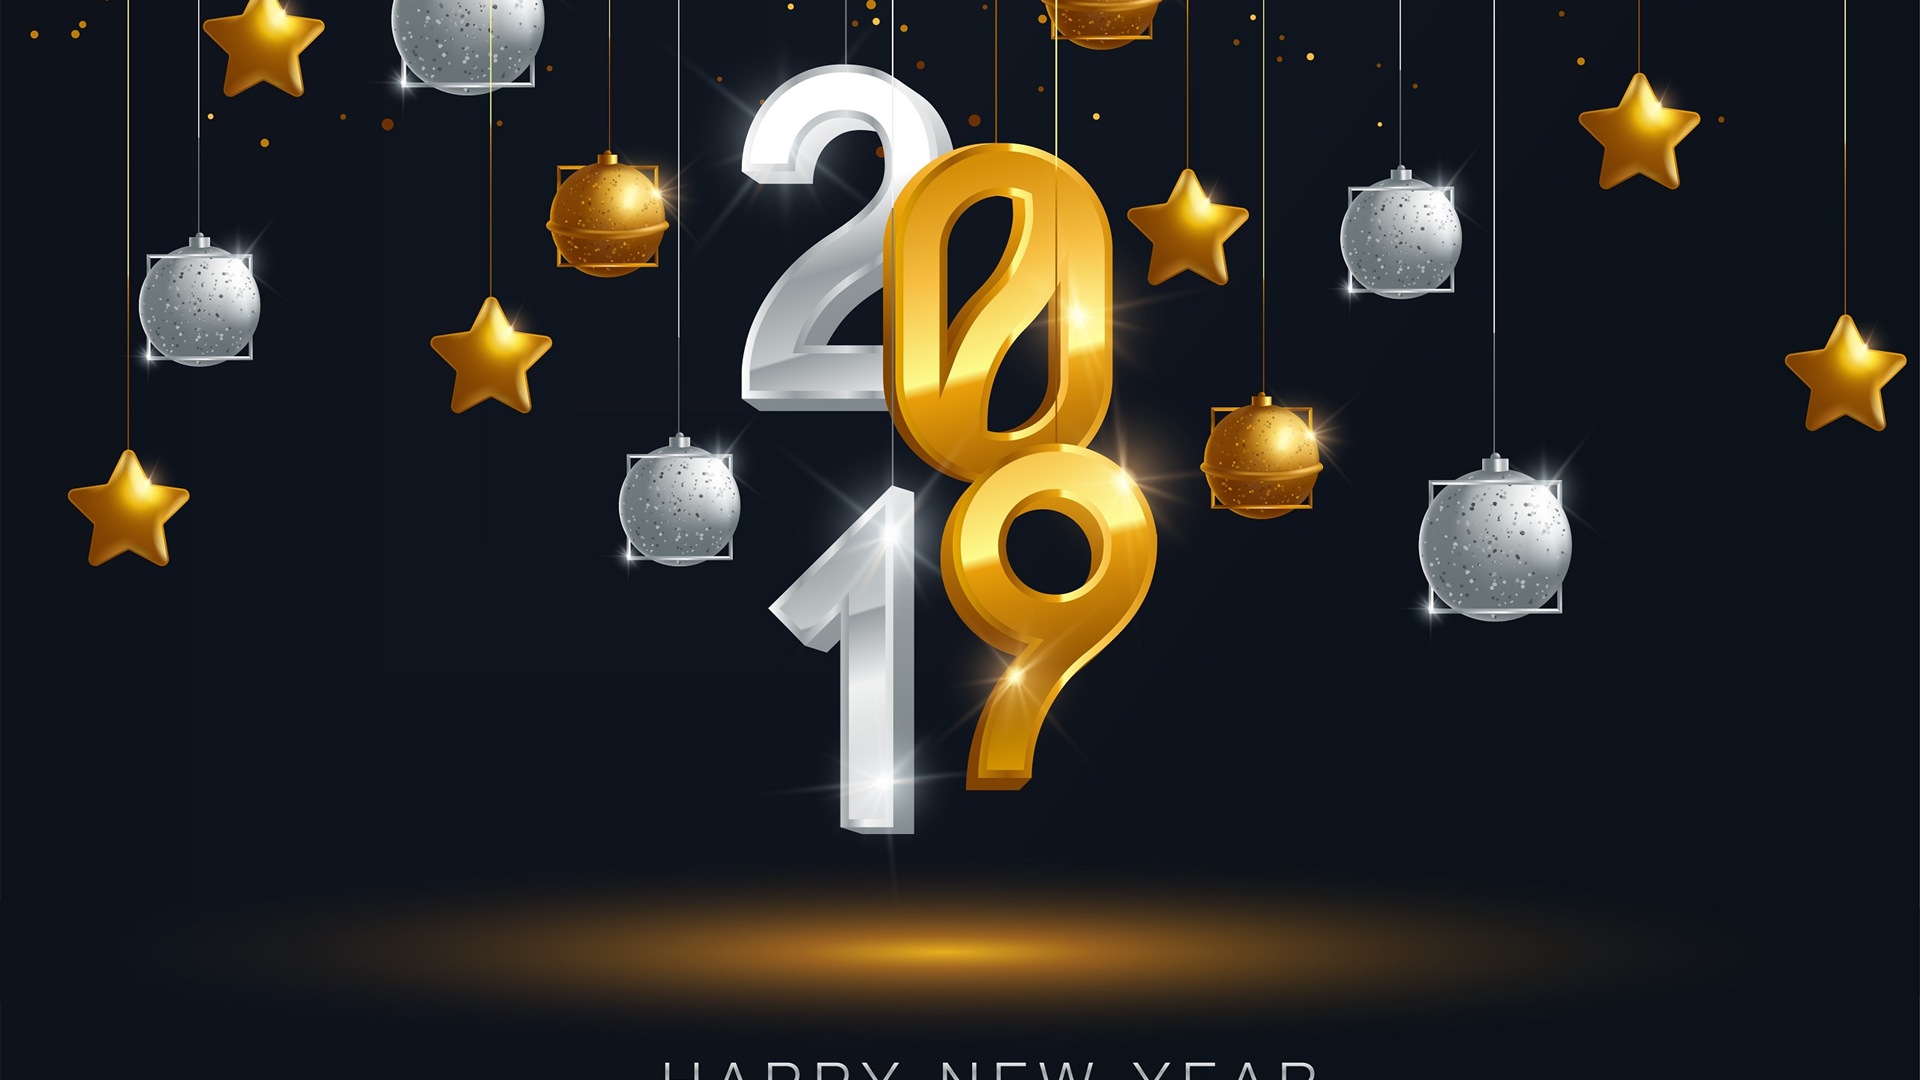 Feliz año nuevo 2019 HD wallpapers #12 - 1920x1080